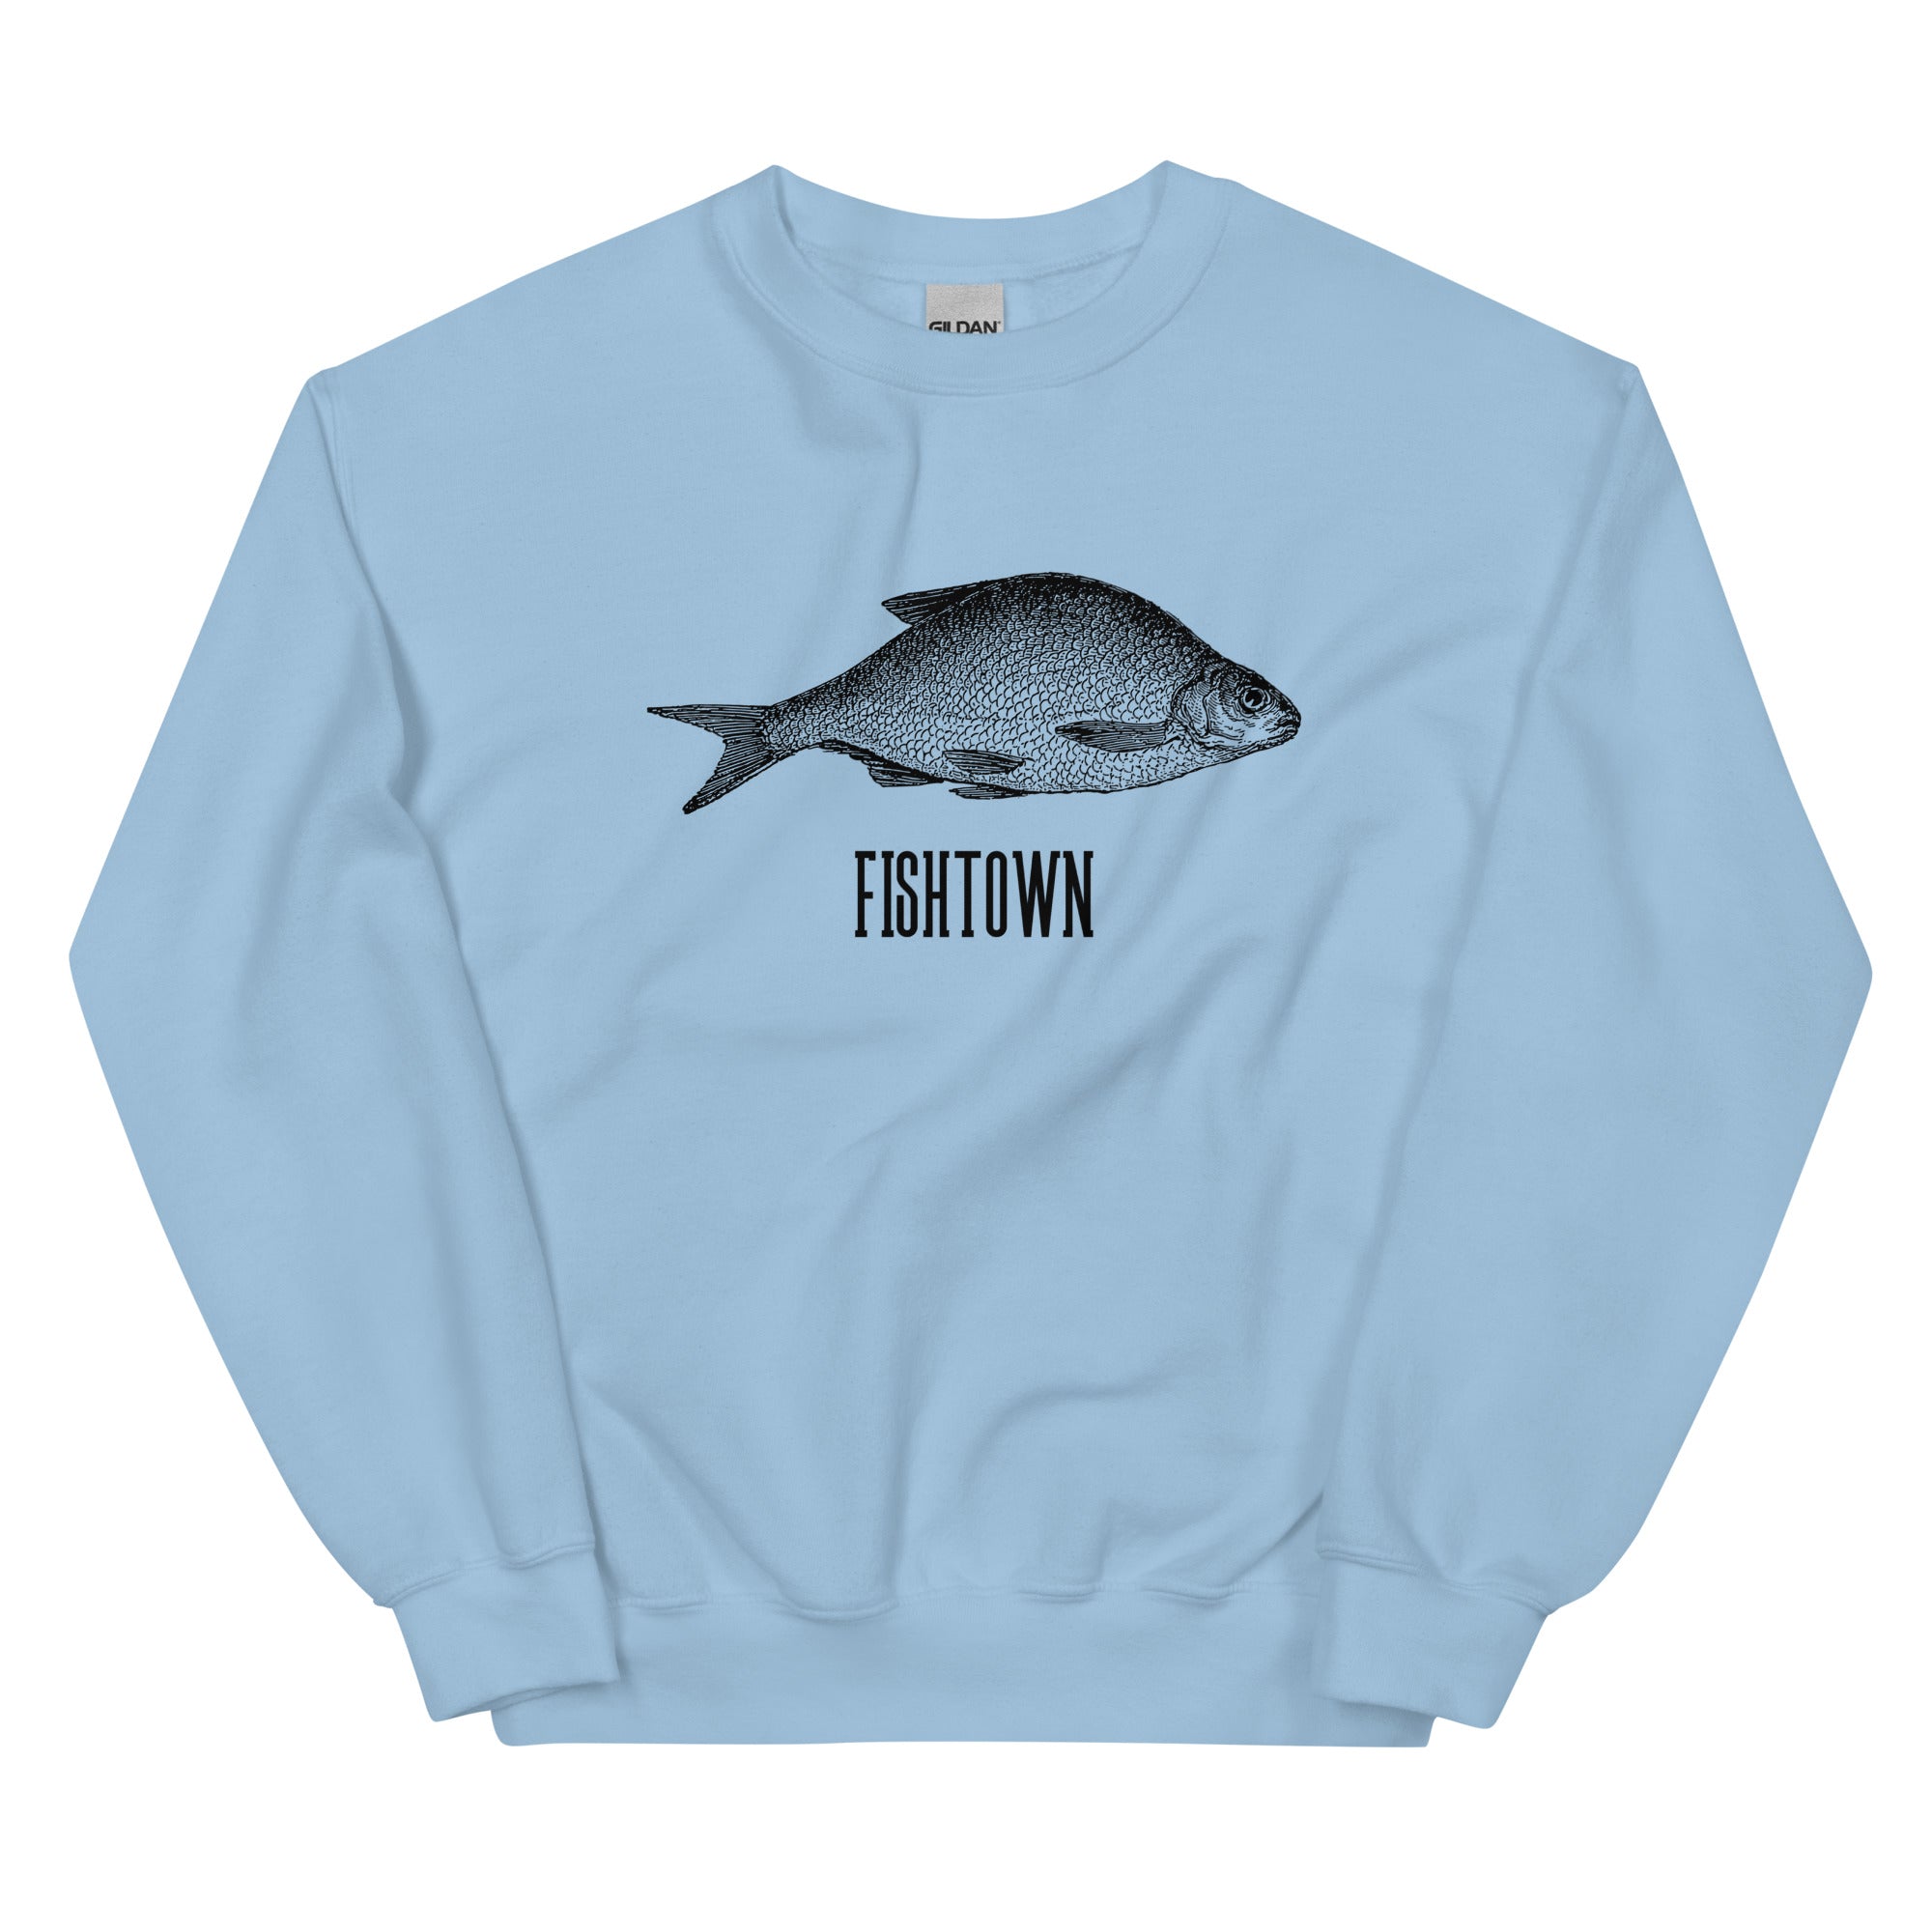 "Fishtown" Sweatshirt